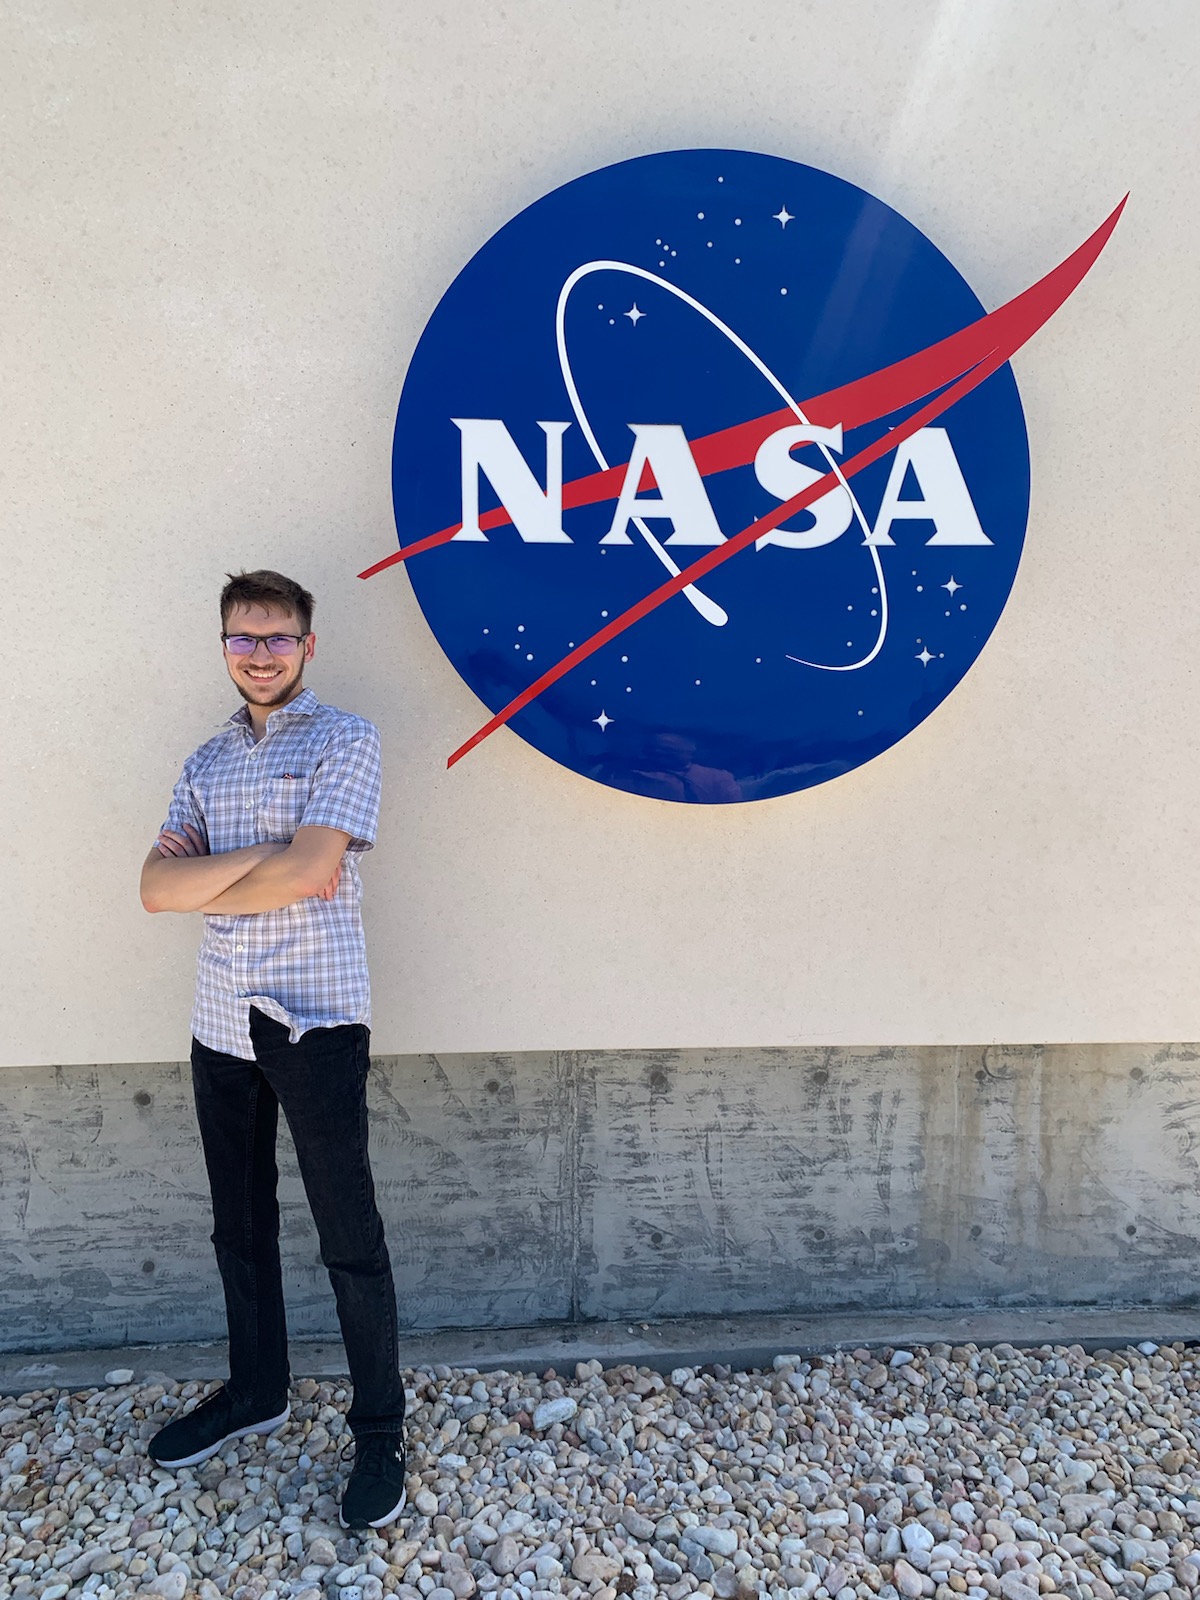 Mitchell Schneller during his internship at NASA.